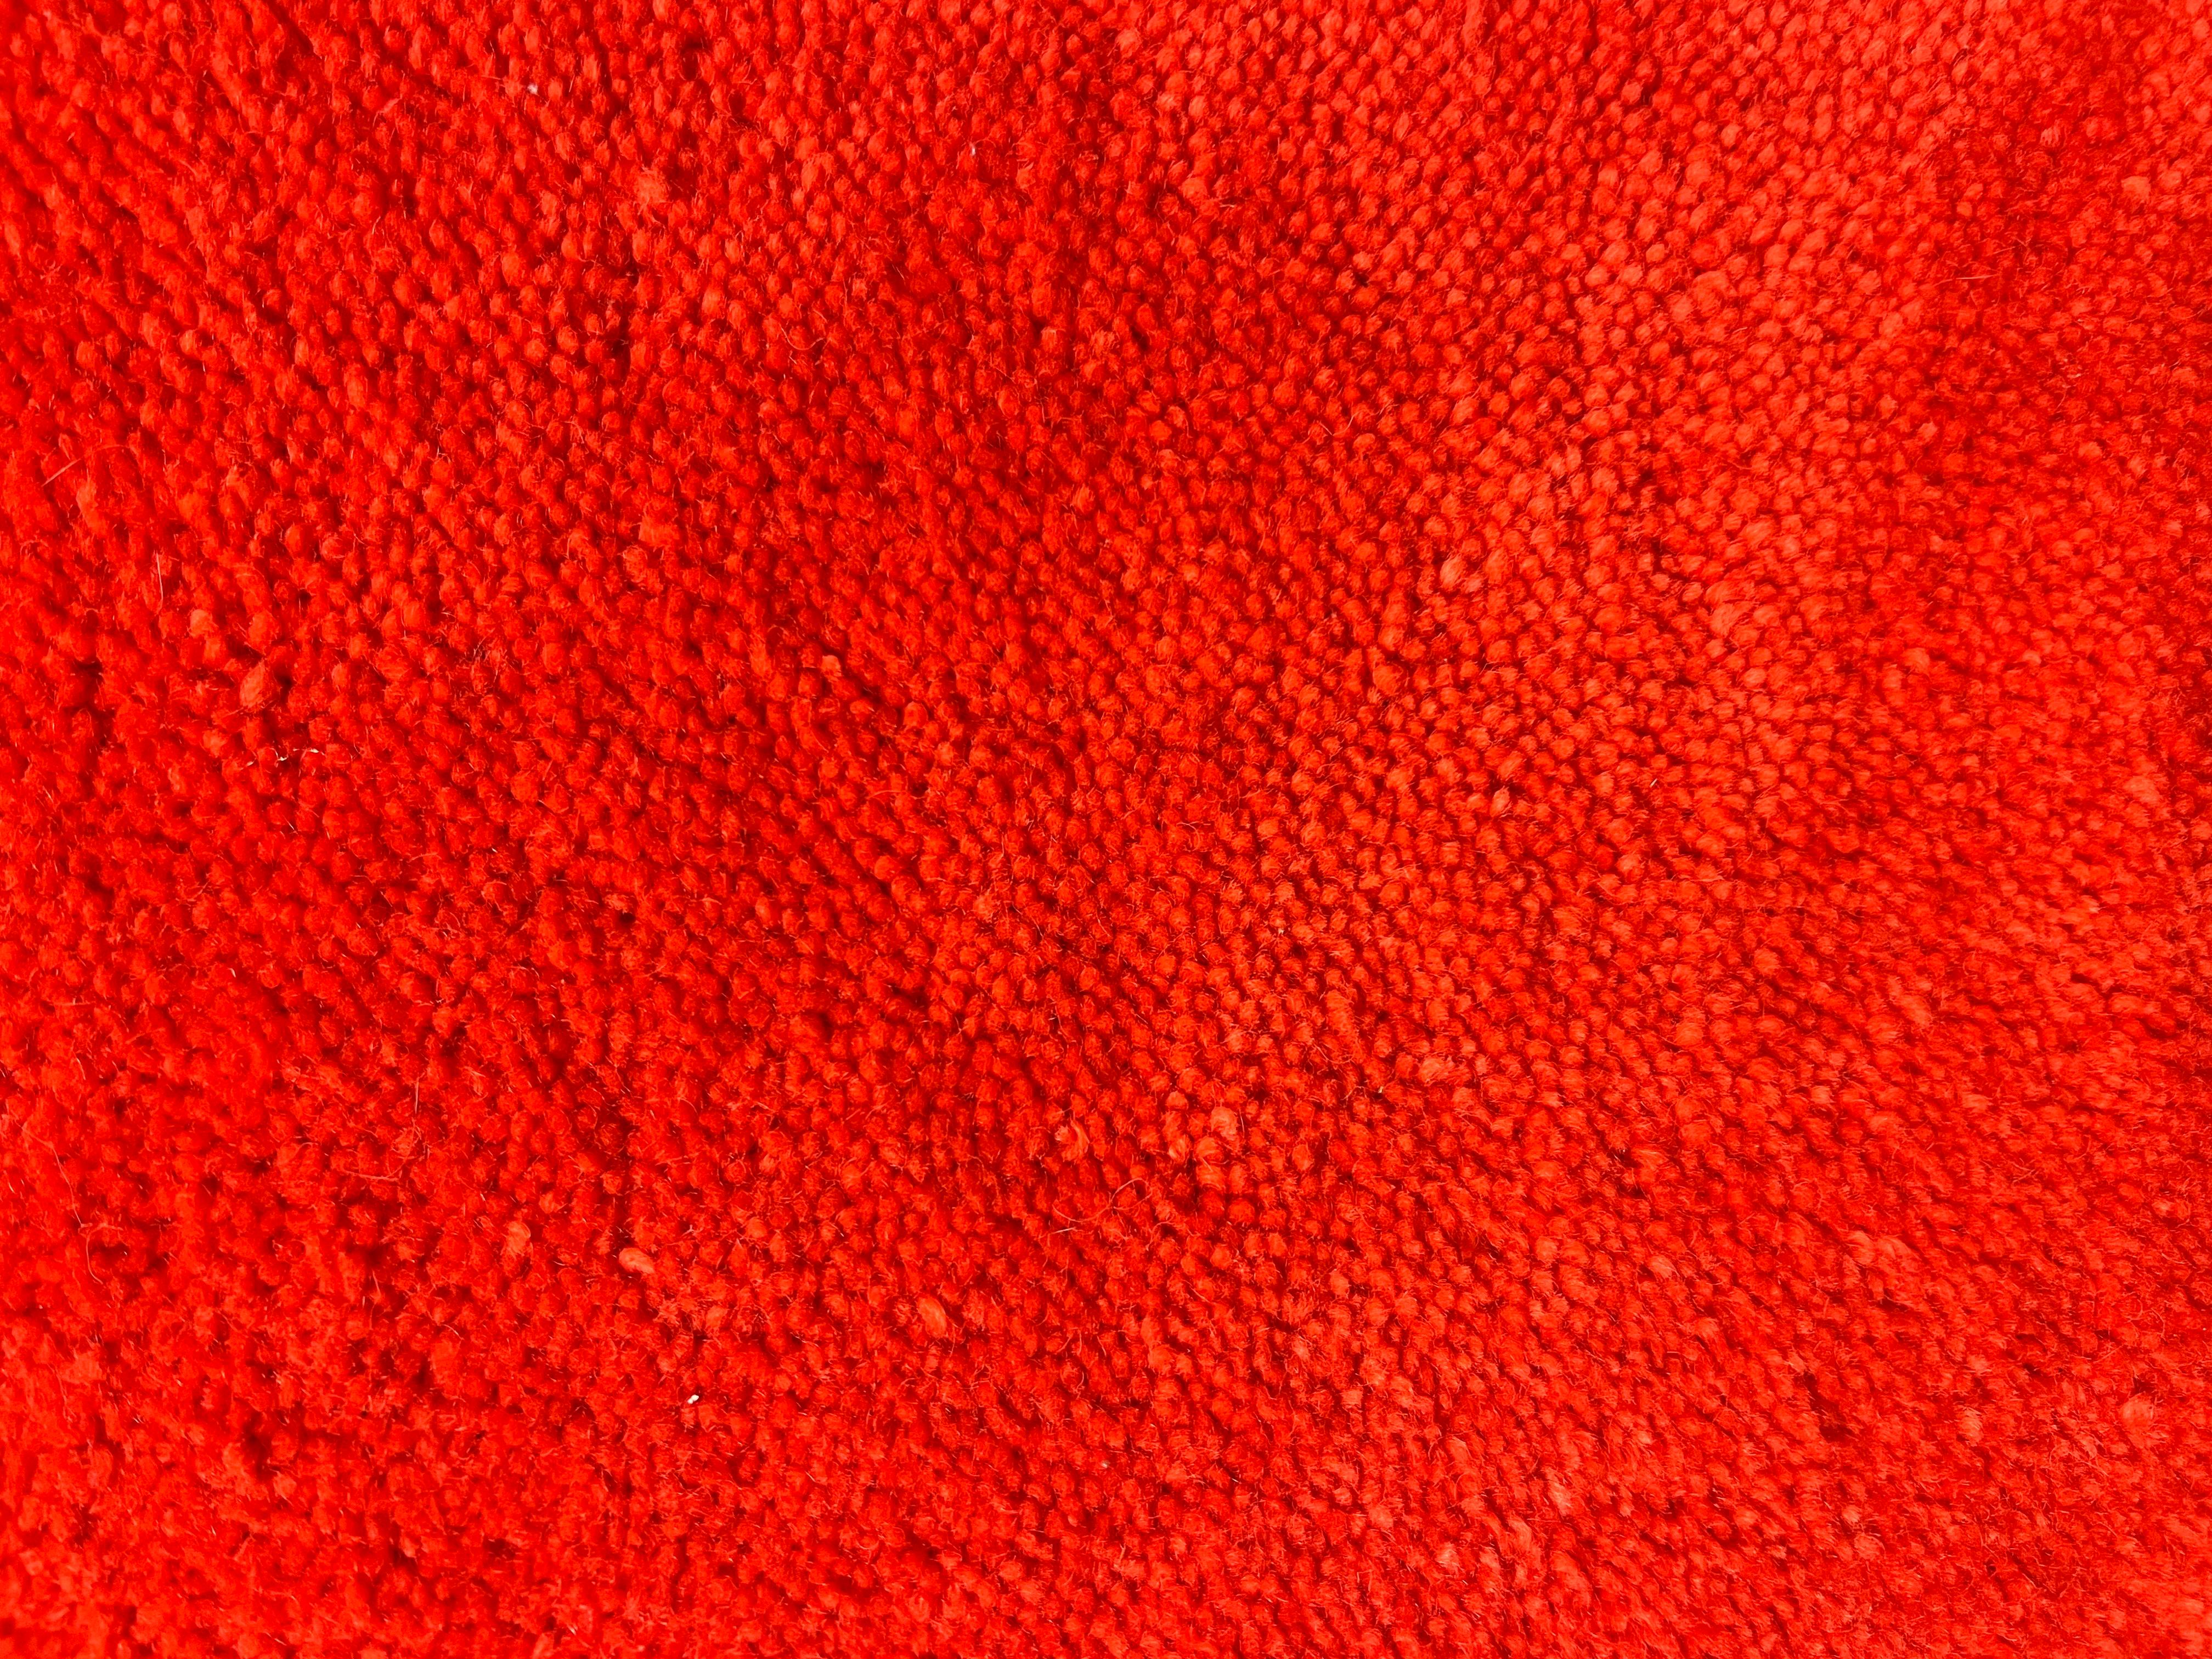 Fantastische und lebendige modernistische harte Kante Wolle hängenden Teppich von Ege Axminster c1960s, Dänemark. Ege ist einer der besten Teppichhersteller in Europa und die Art Line ist eine sehr begehrte Teppichserie, die meisten wurden von